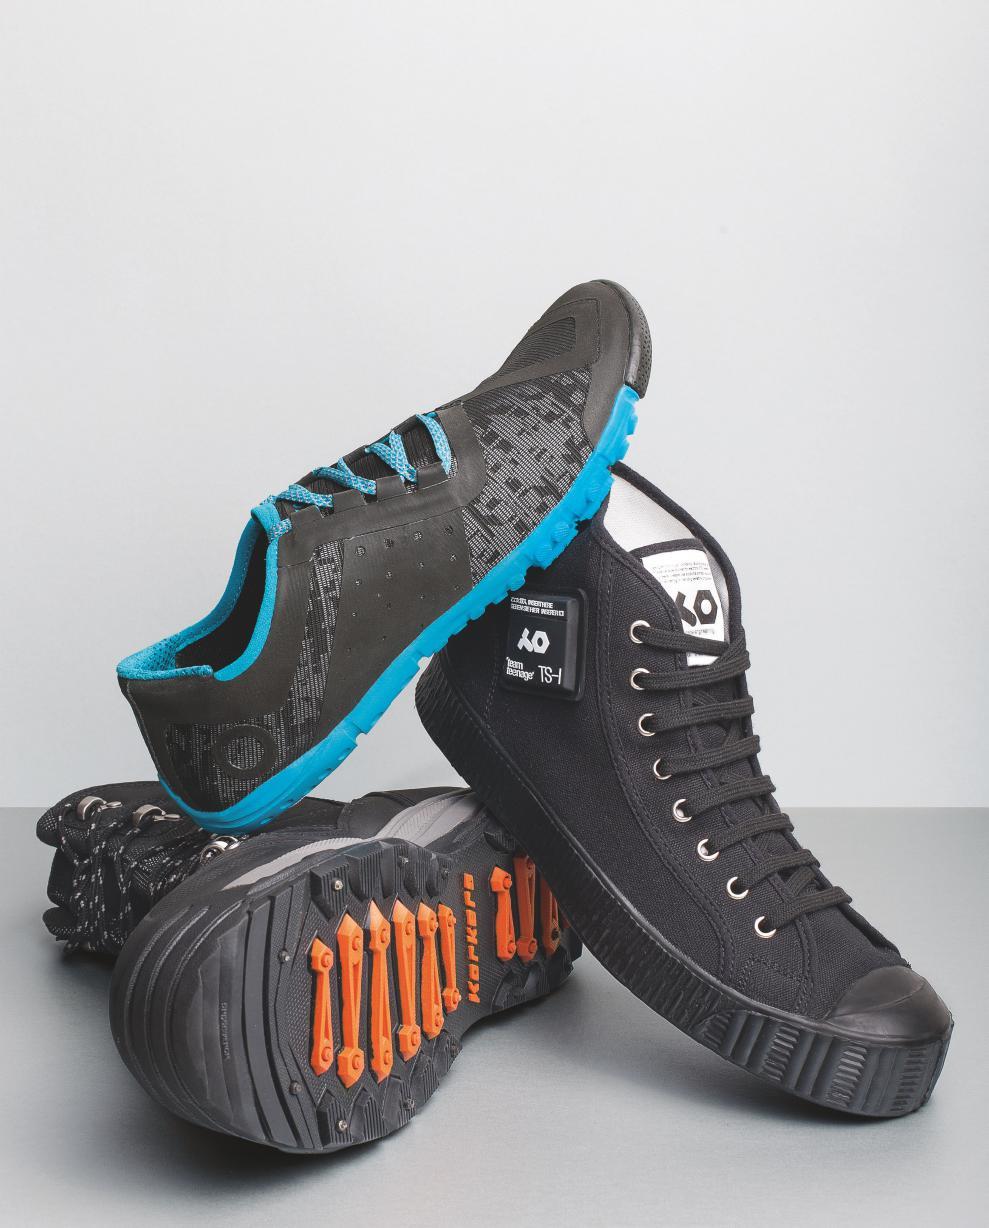 MODA Il mondo ai tuoi piedi KORKERS: QUESTIONE DI SUOLA I designer innovativi di Korkers hanno creato le scarpe perfette per qualsiasi attività basta cambiare la suola. Vai a pescare?